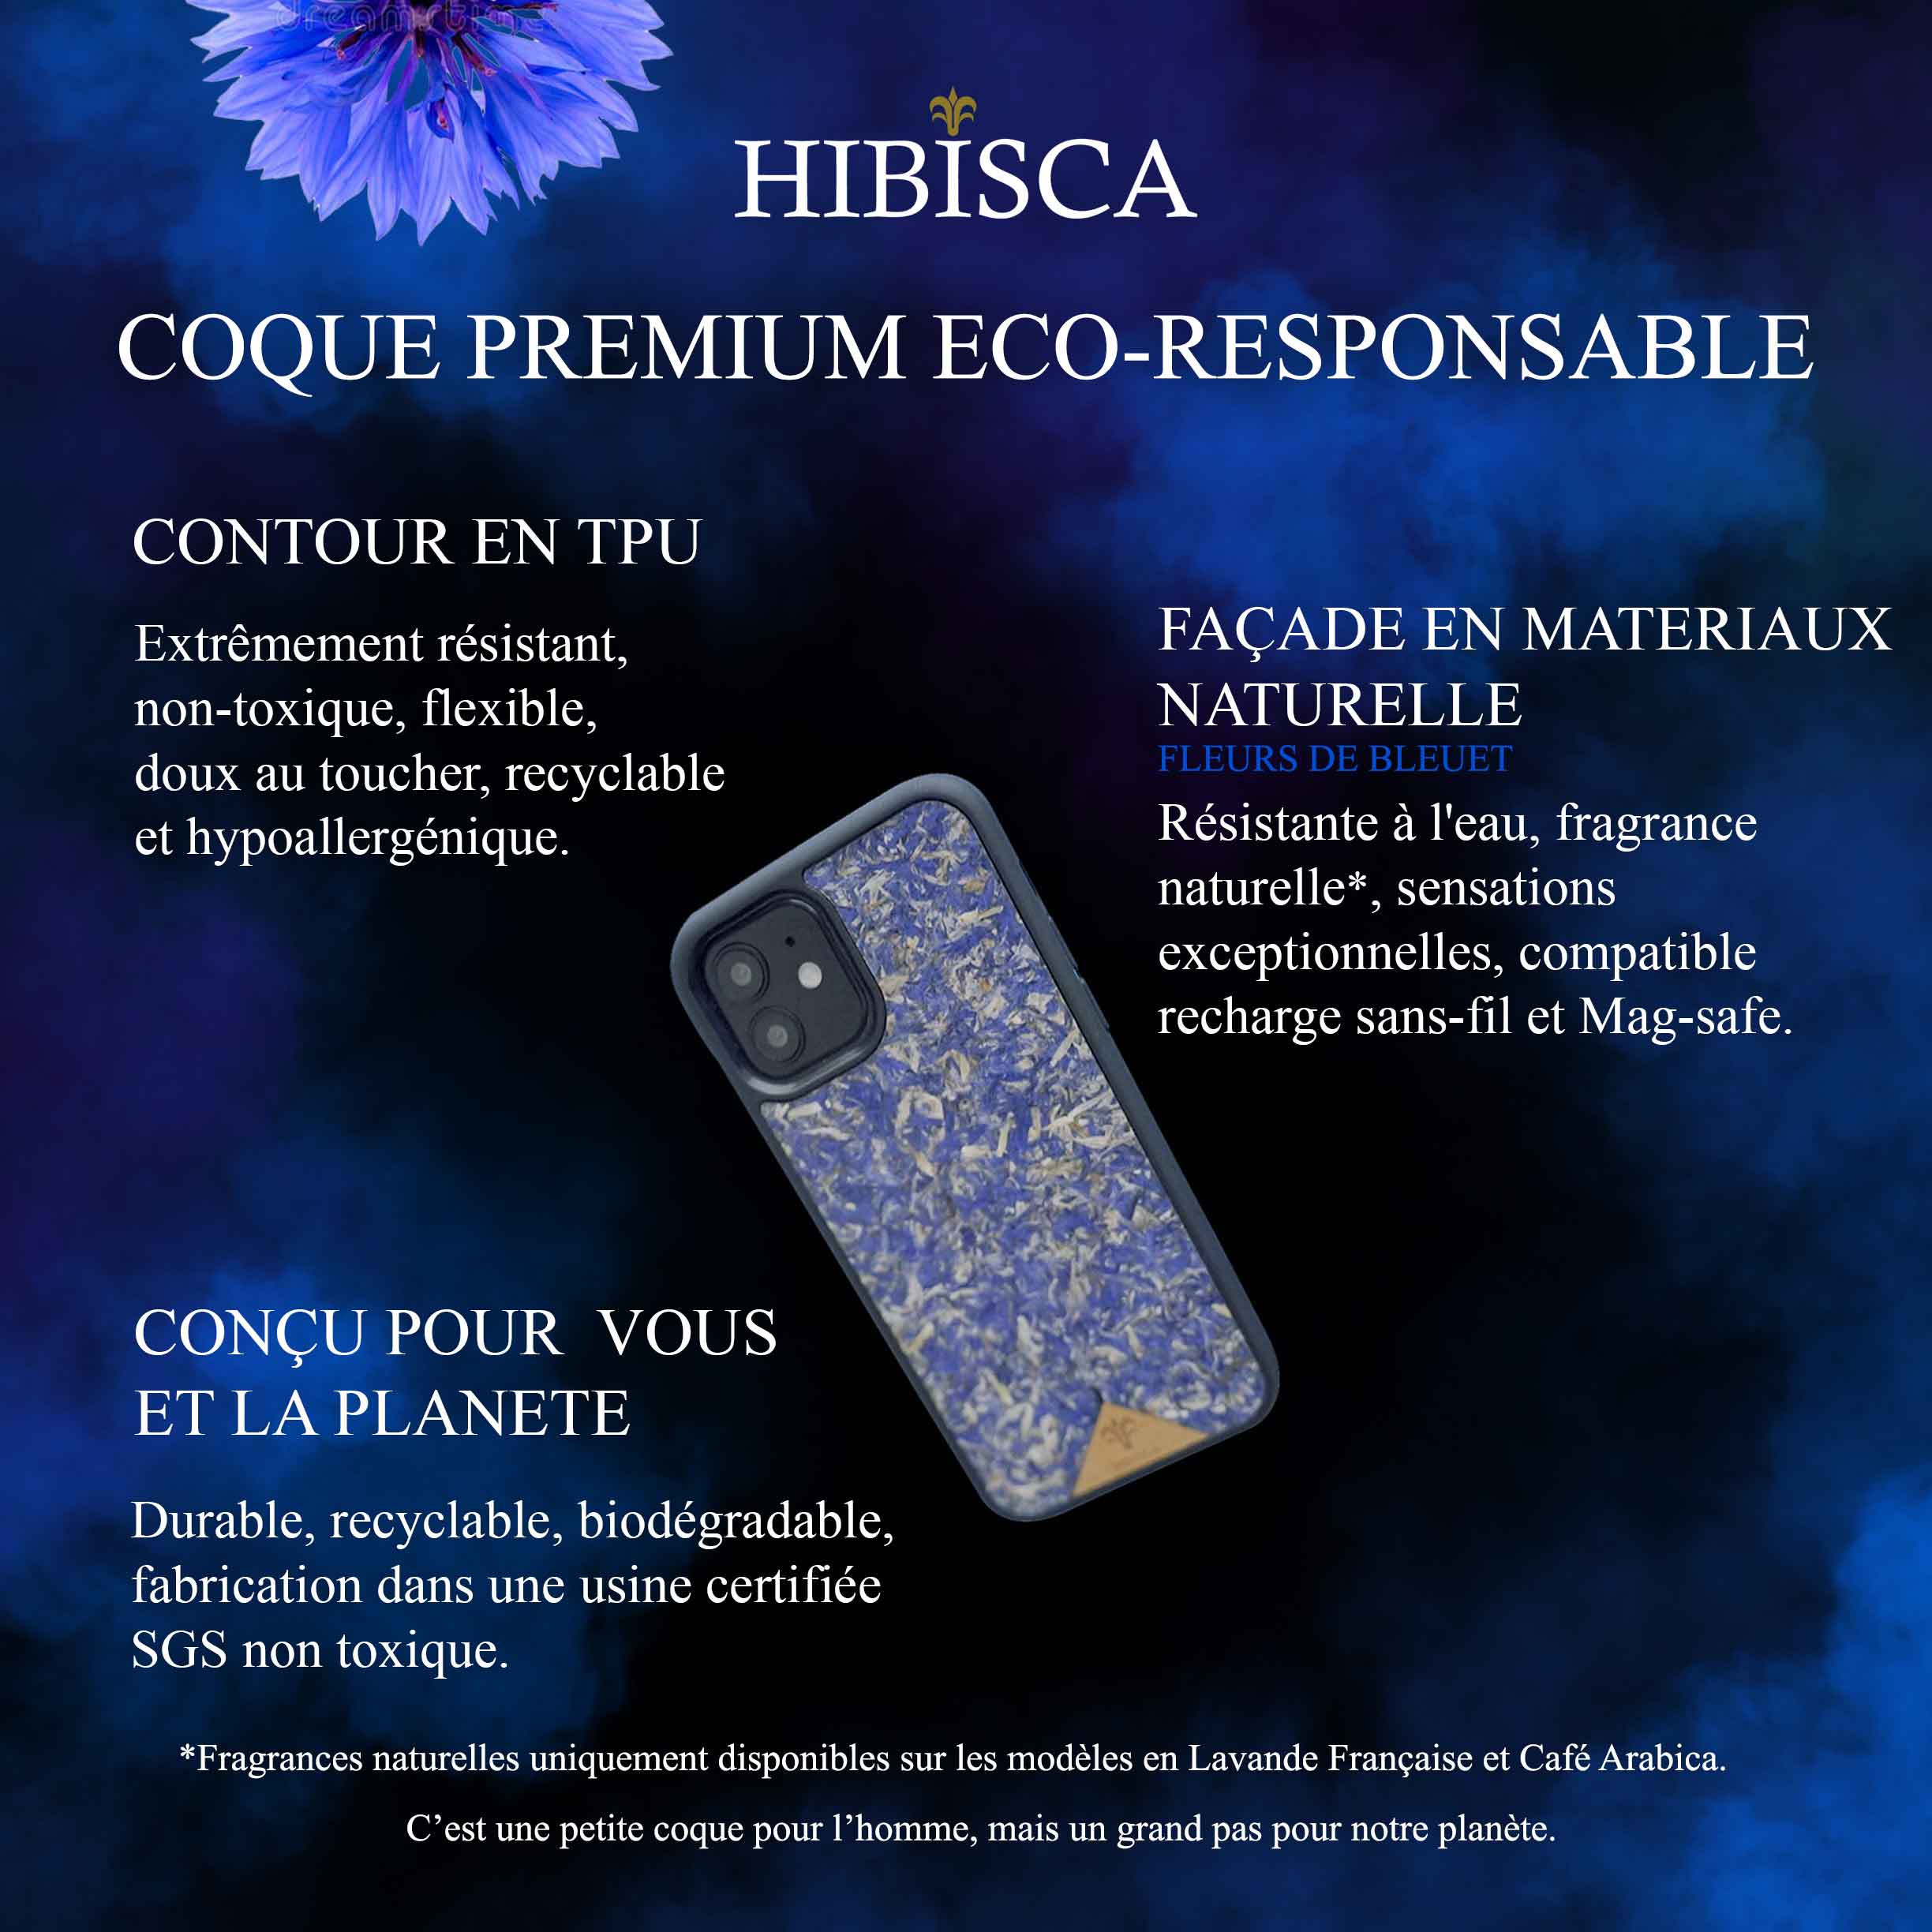 Image représentant une coque iphone écoresponsable Hibisca faite à partir de fleurs de bleuet.